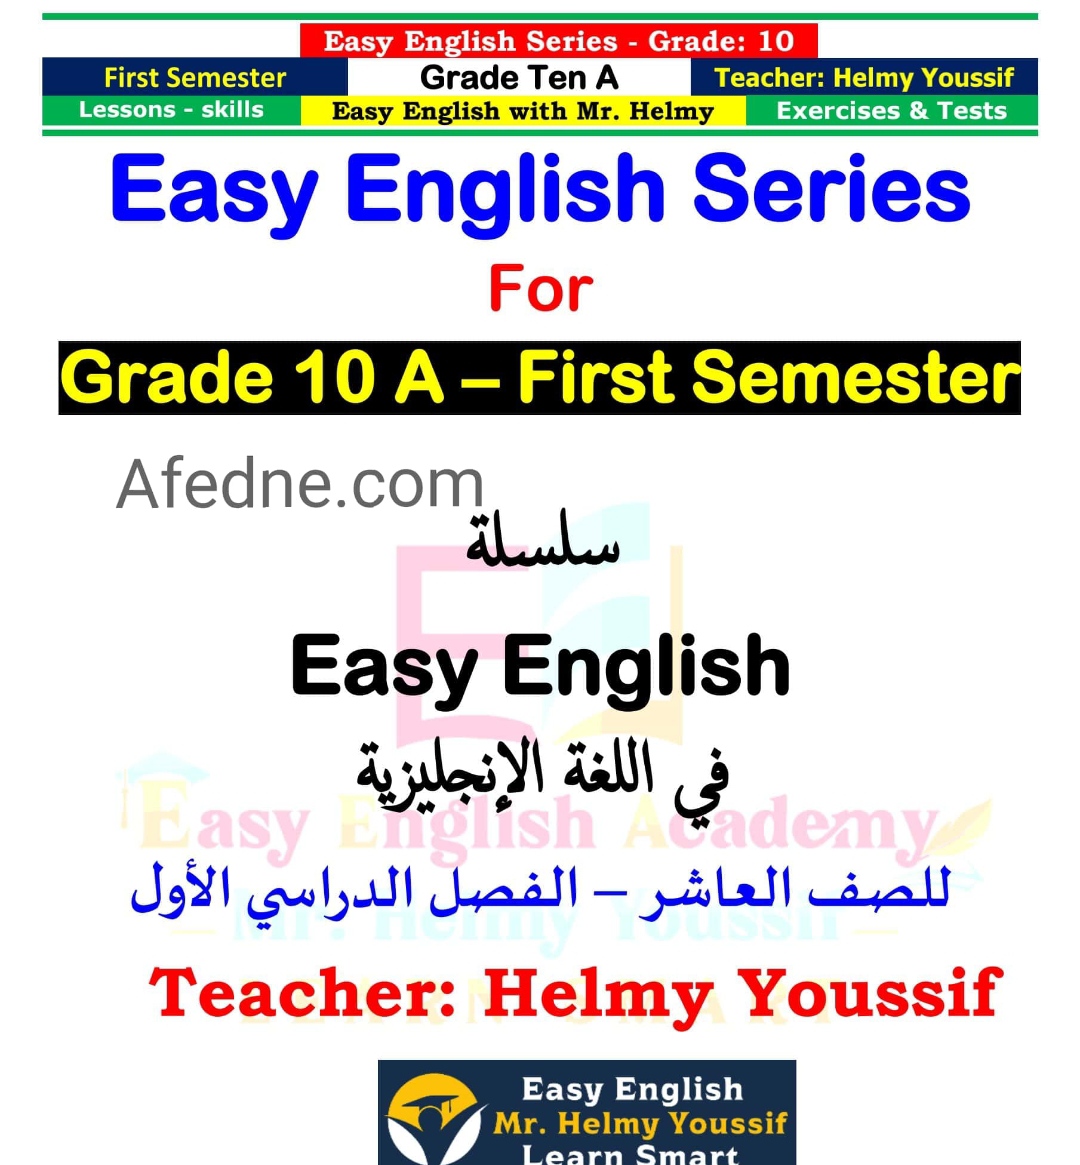 تحميل سلسلة Easy English في اللغة الانجليزية للصف العاشر فصل أول عمان